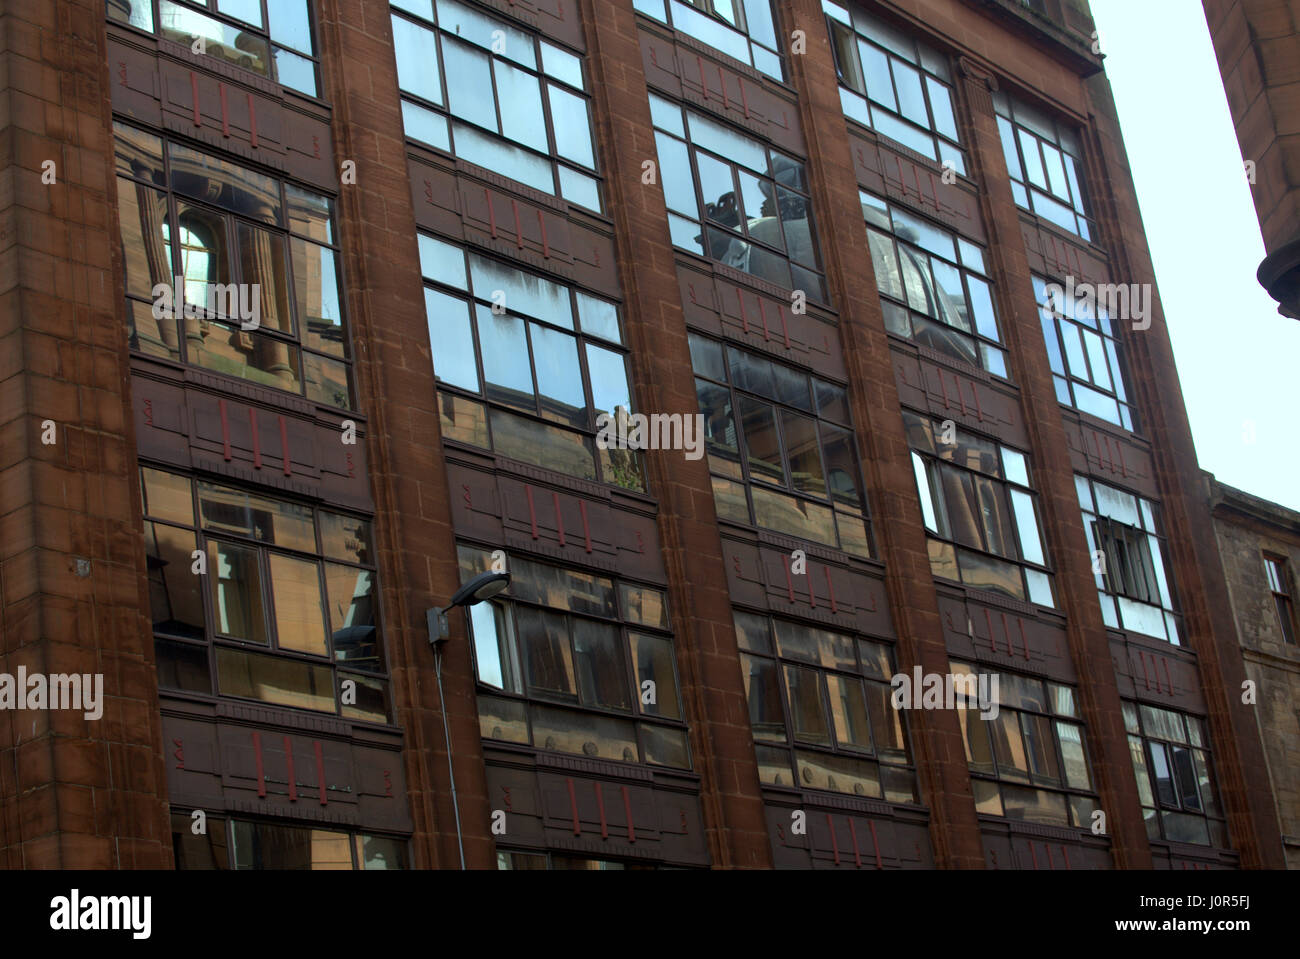 Reflet de Glasgow grès victorien orné rouge dans immeuble art déco au xxe siècle des façade industrielle Banque D'Images